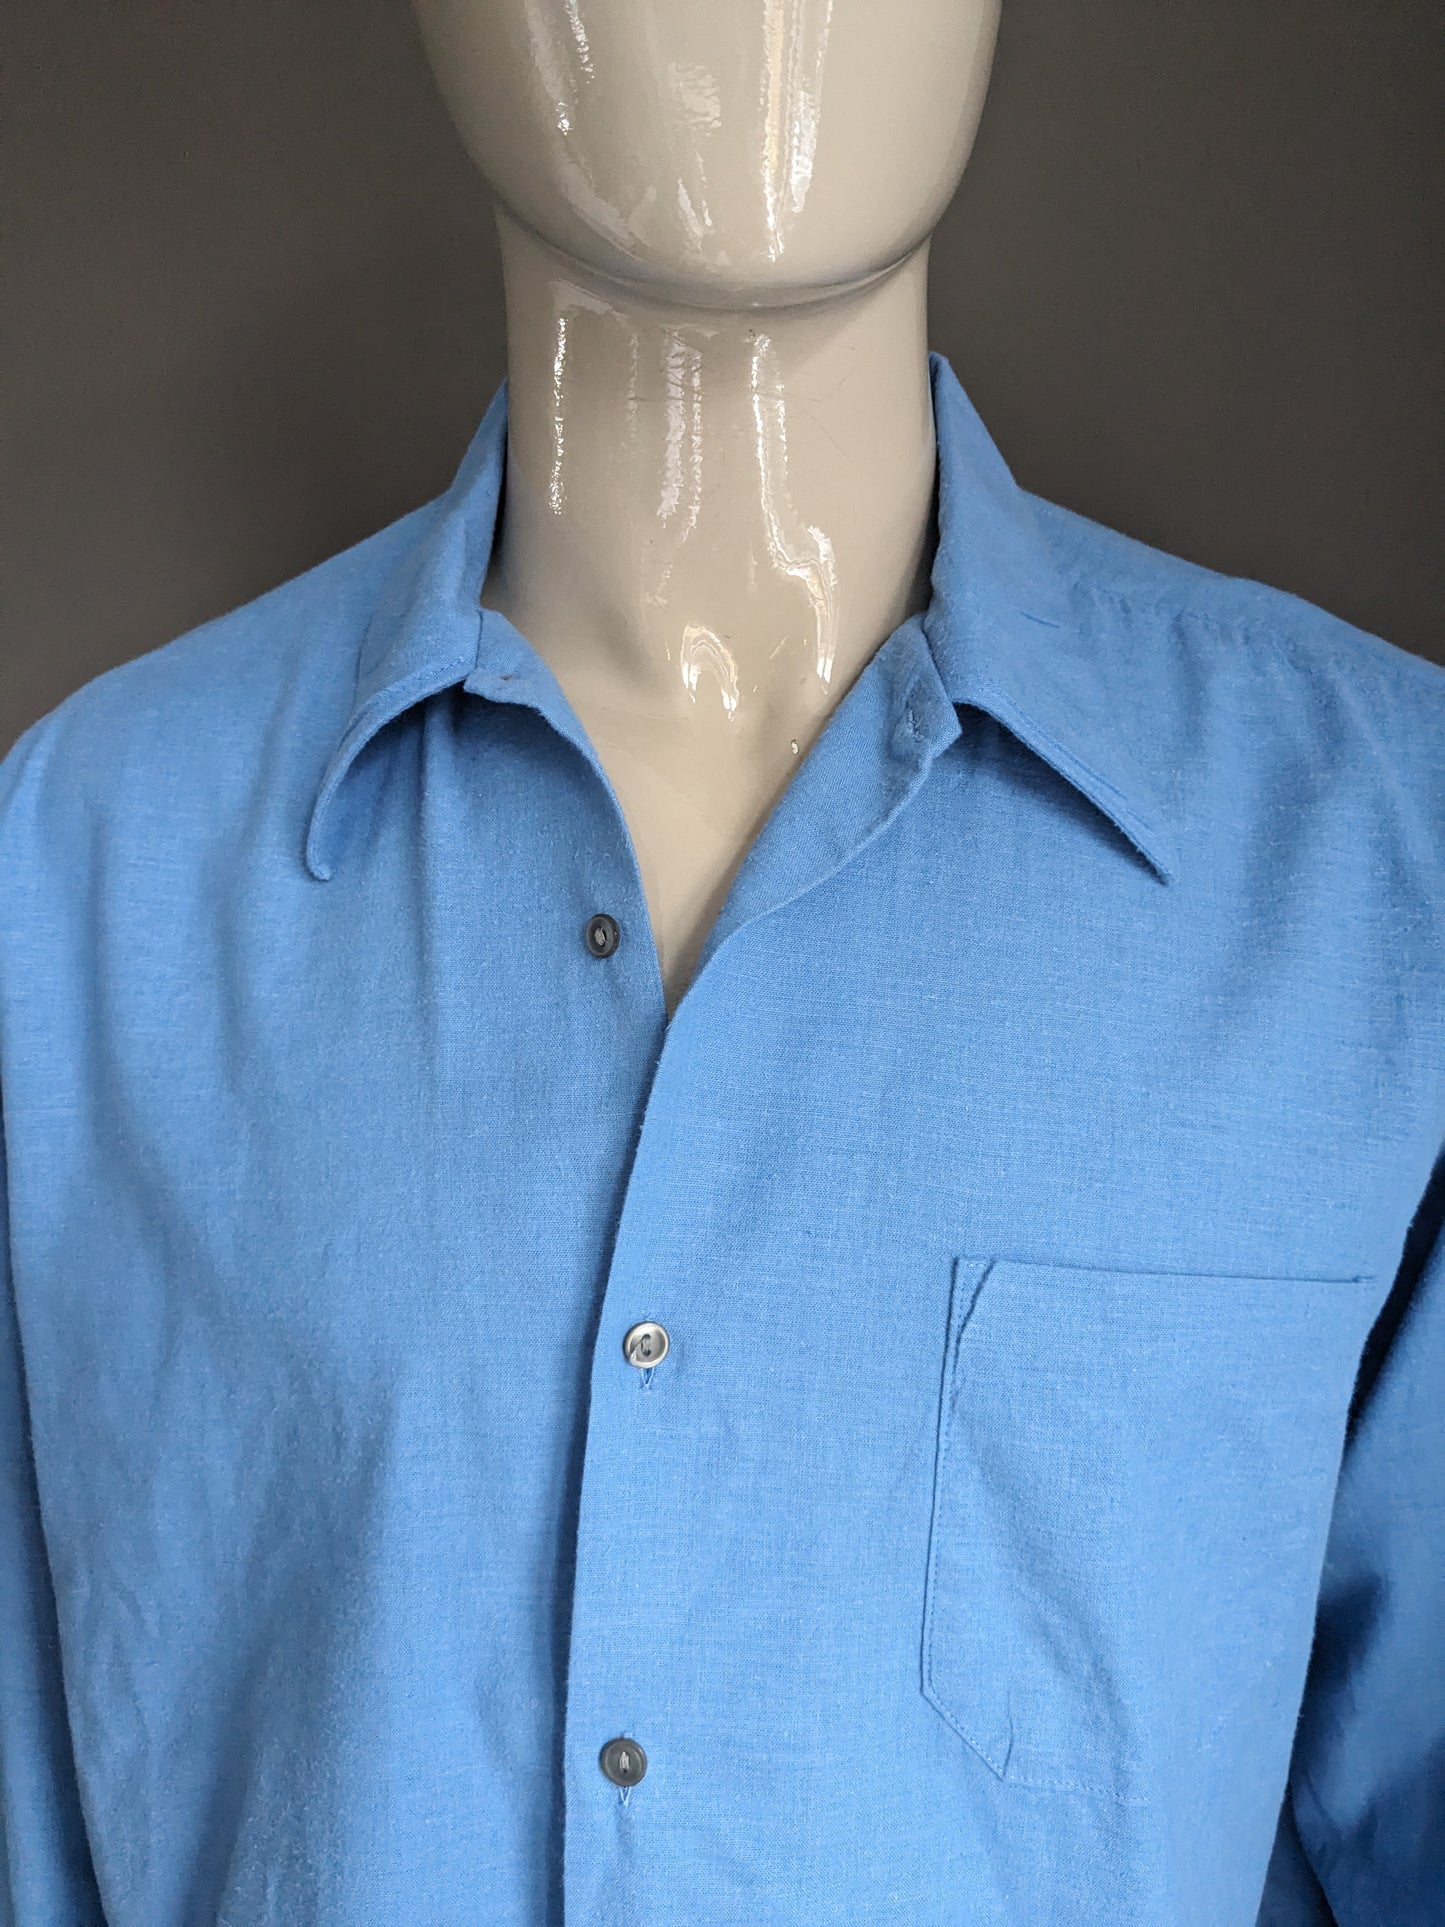 Camicia vintage degli anni '70 con colletto punto. Colorato blu. Dimensione 2xl / xxl.